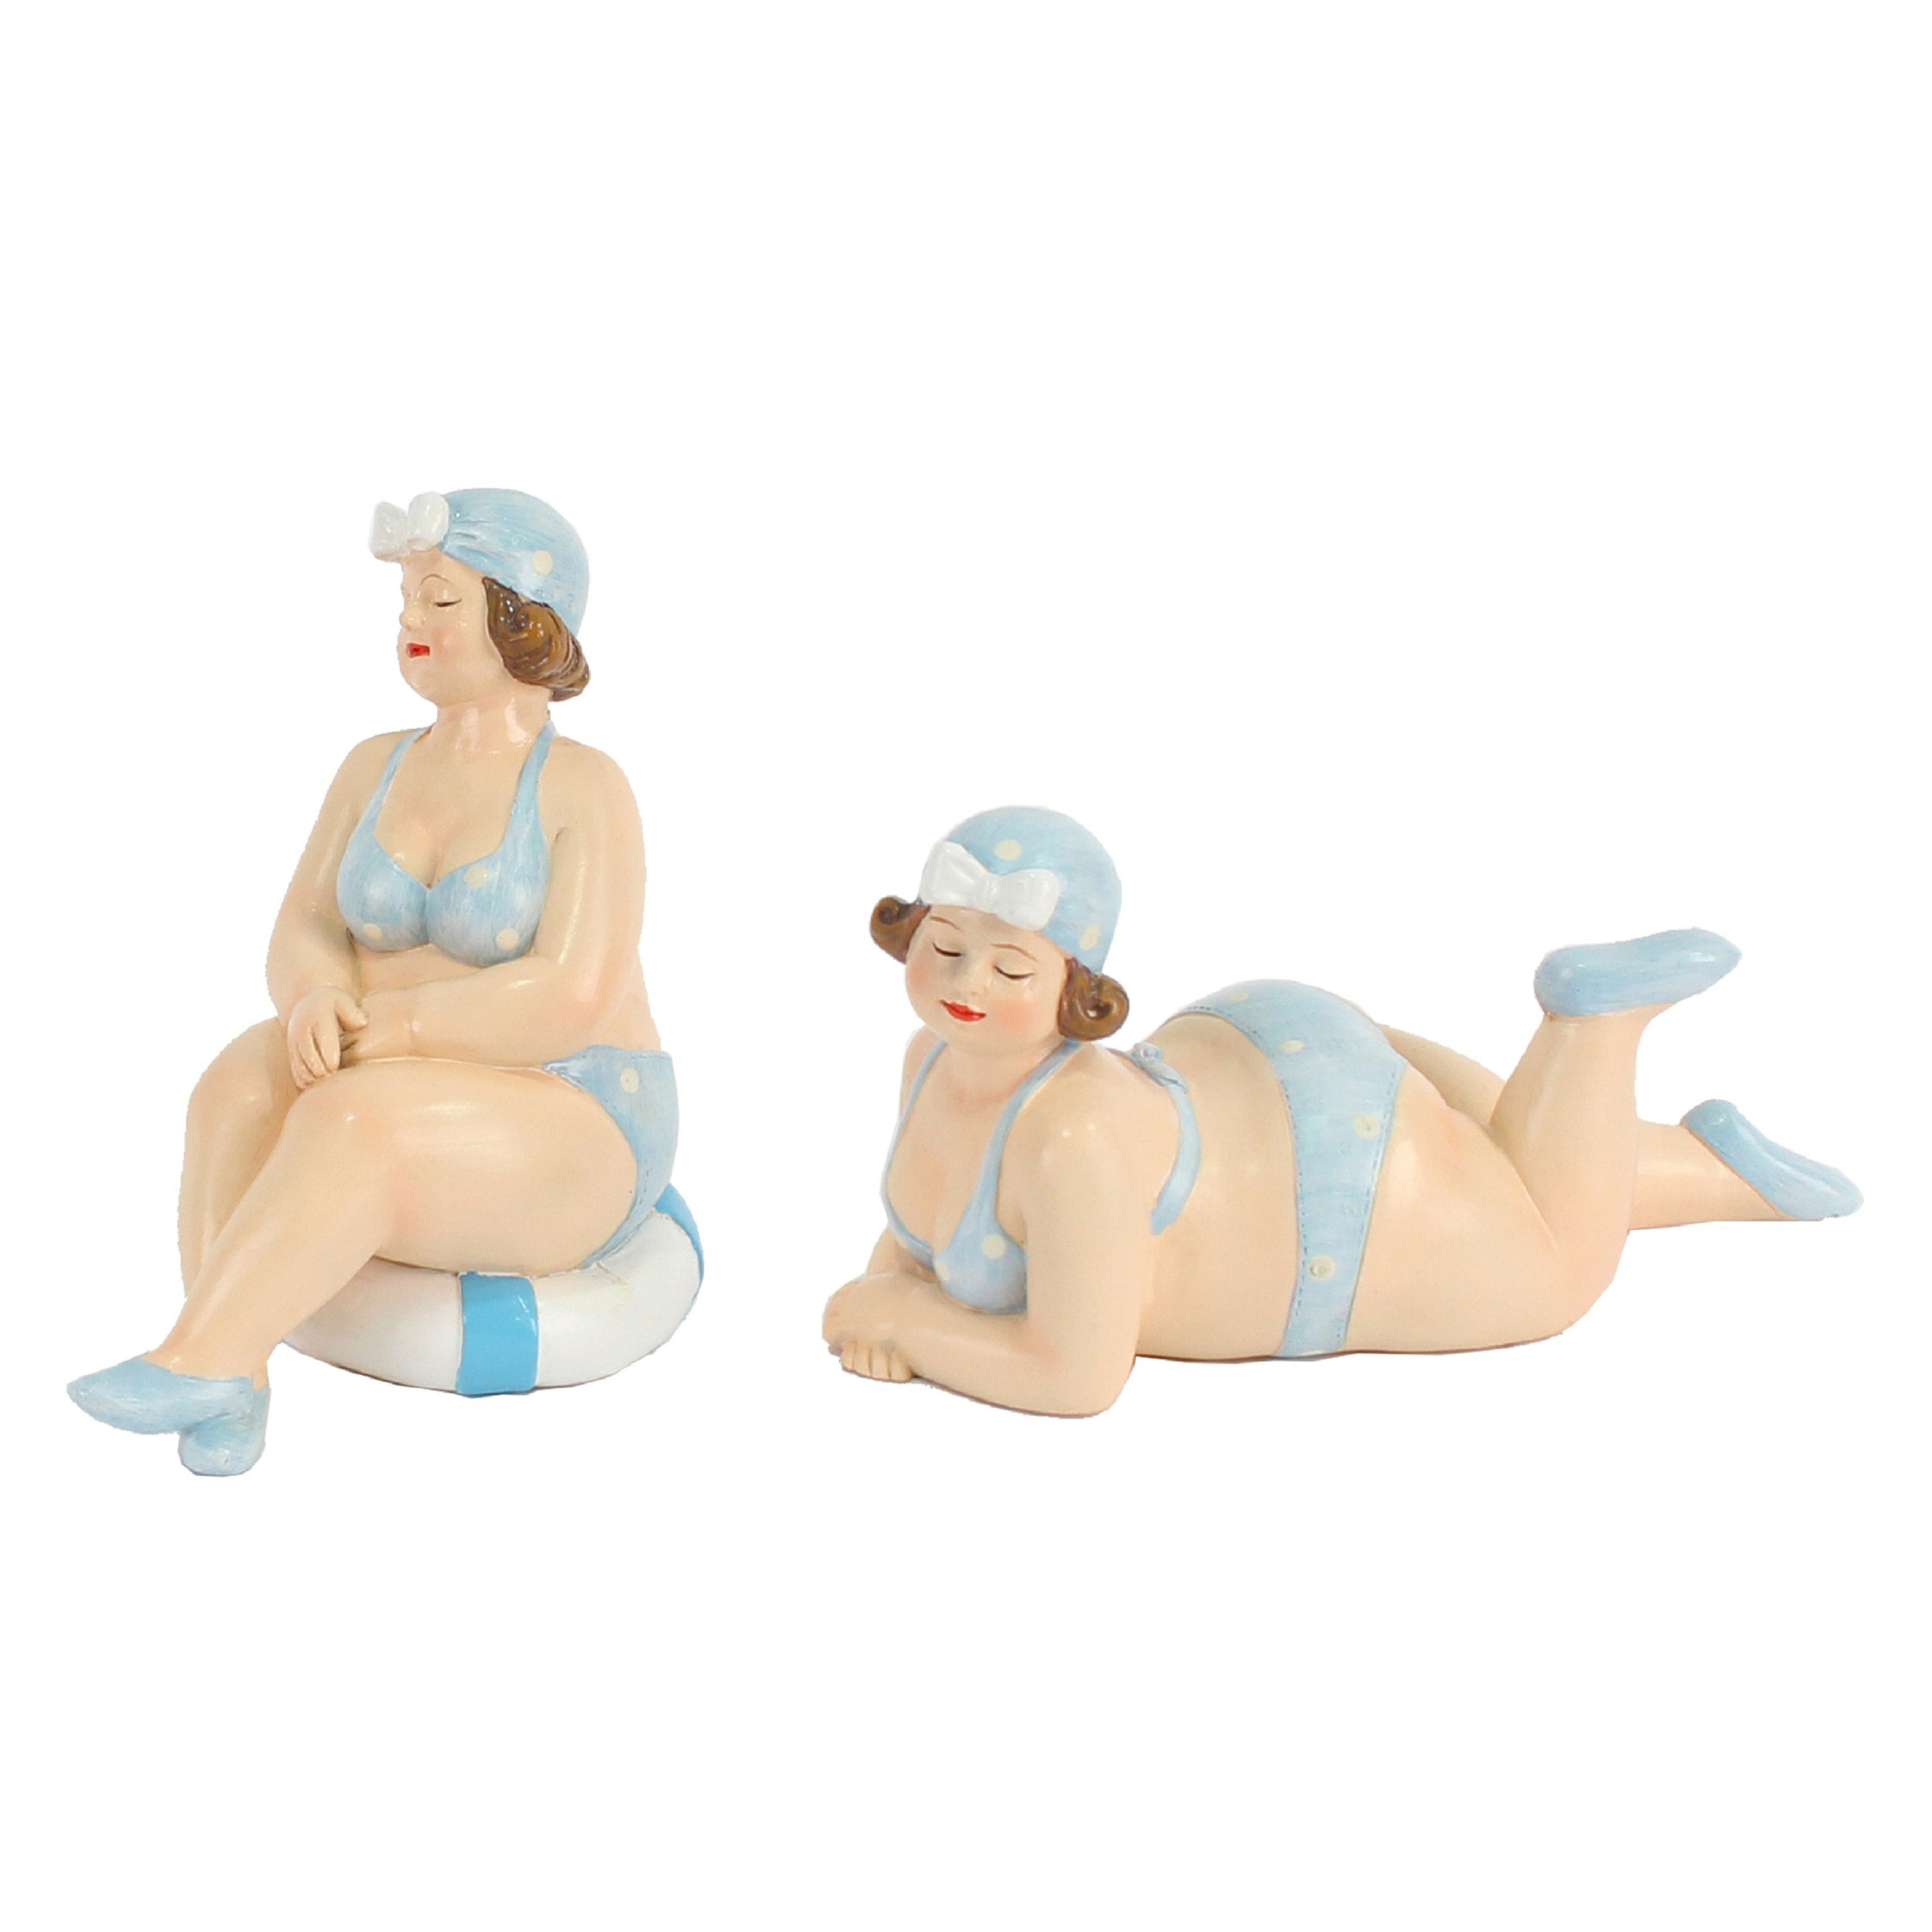 Woonkamer decoratie beeldjes set van 2 dikke dames blauw badpak 11 cm